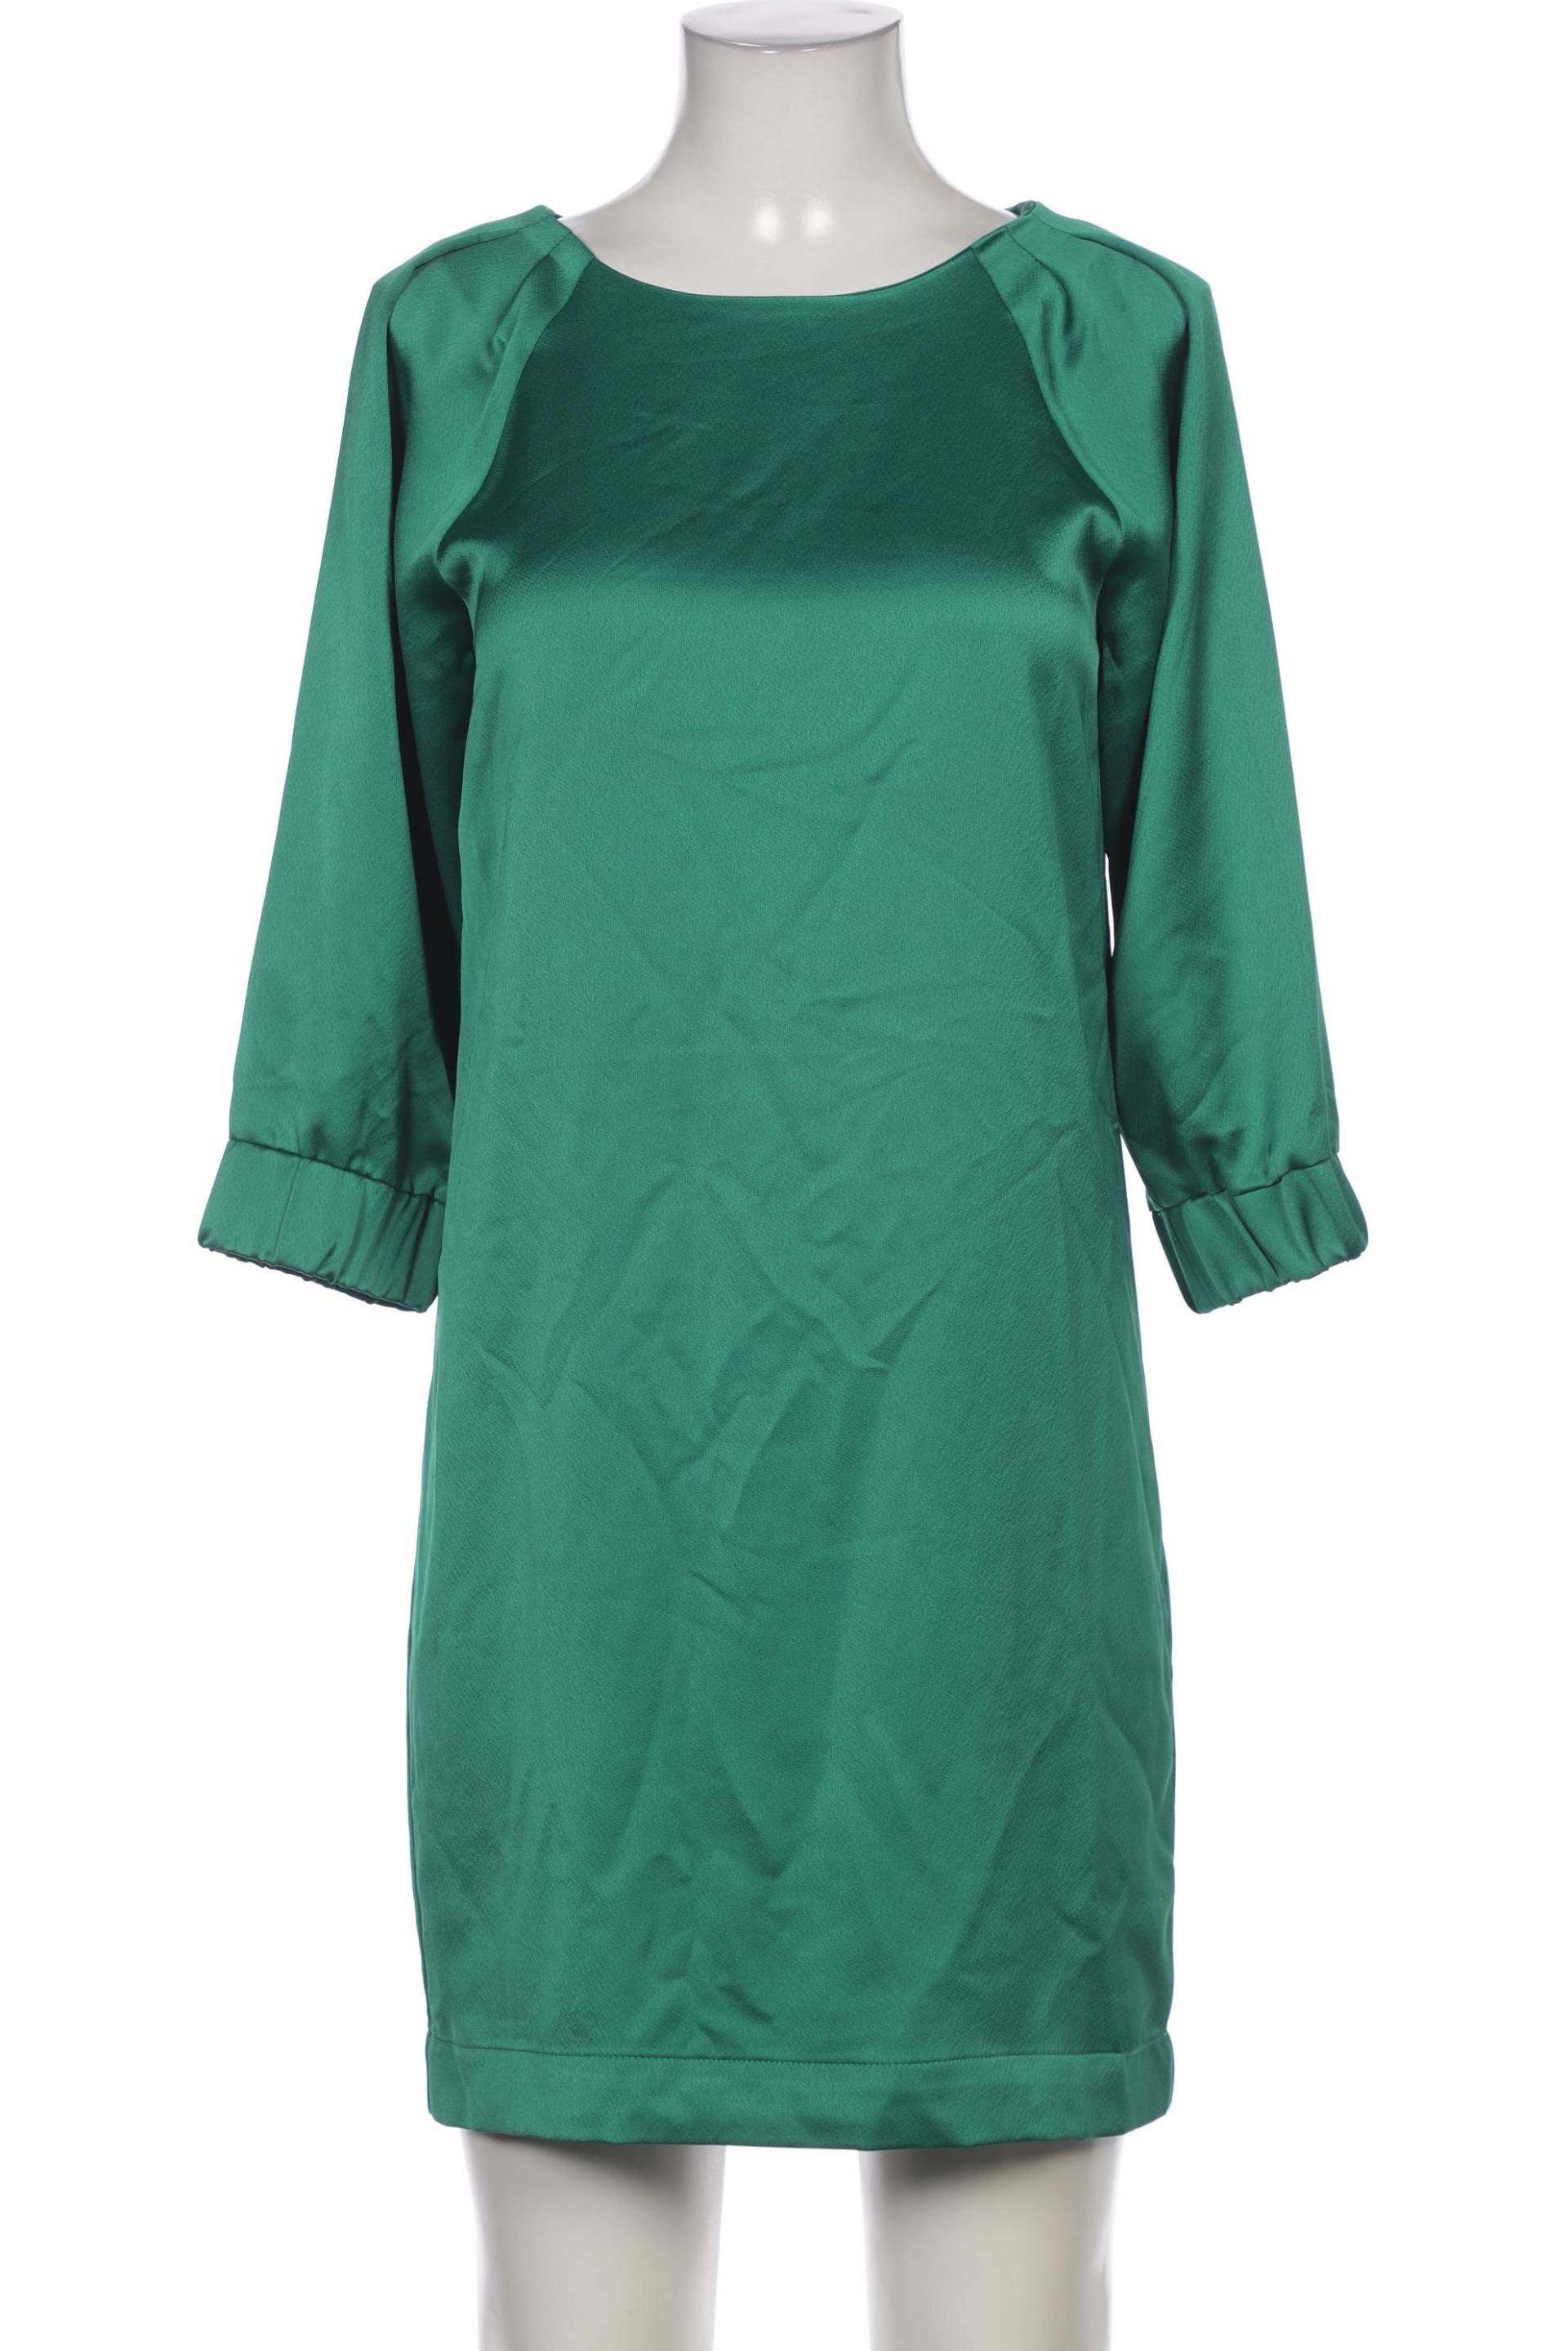 Hallhuber Damen Kleid, grün von Hallhuber